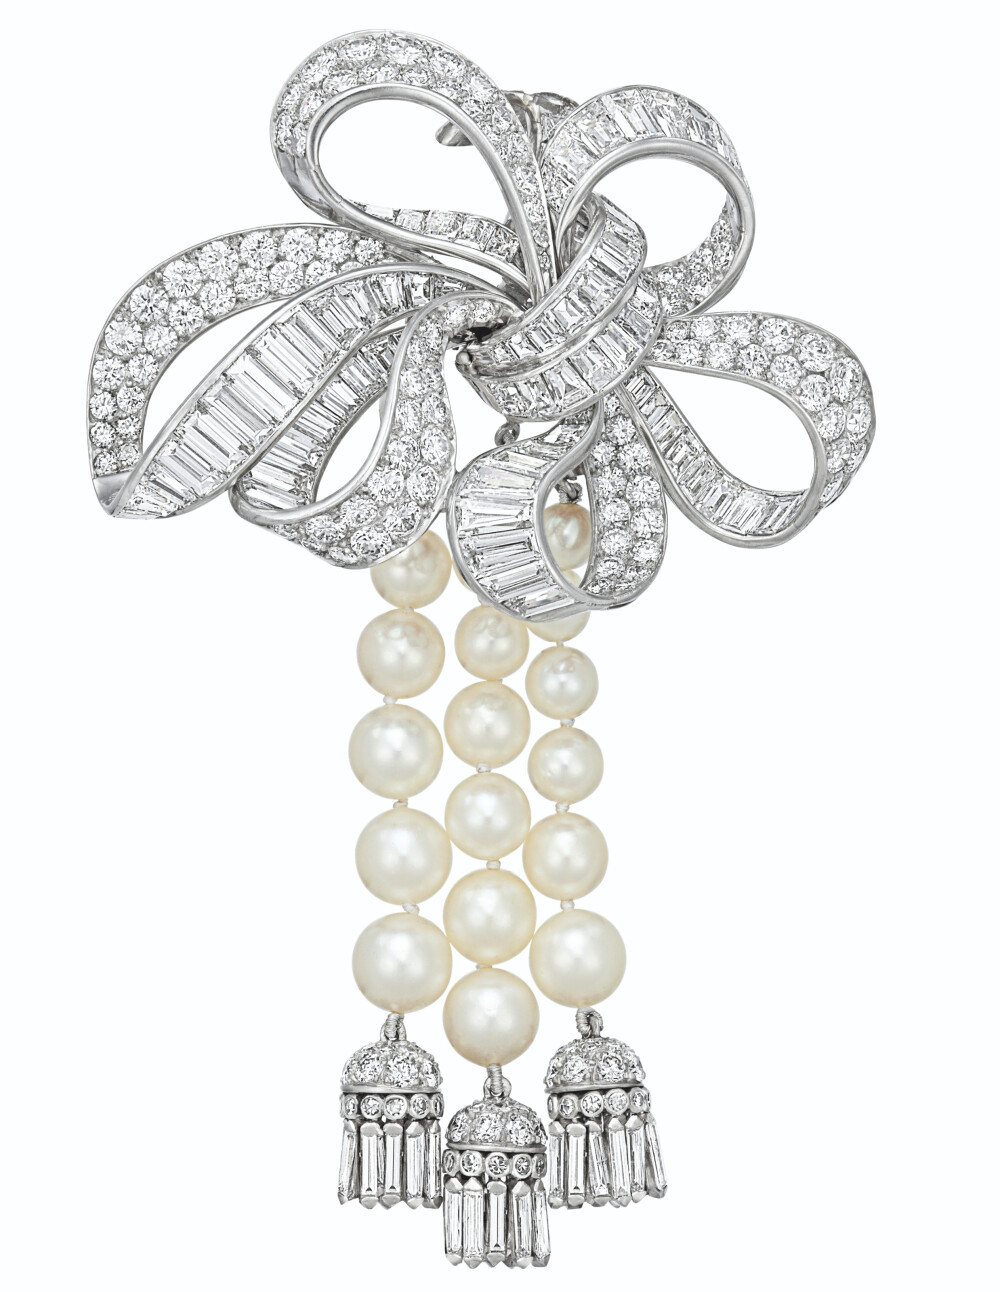  Van Cleef & Arpels 梵克雅宝 钻石珍珠胸针 镶嵌圆形、长方形和锥形长方形切割钻石，养殖珍珠，铂金和18K白金，约5.5厘米。成交价6.25万美元